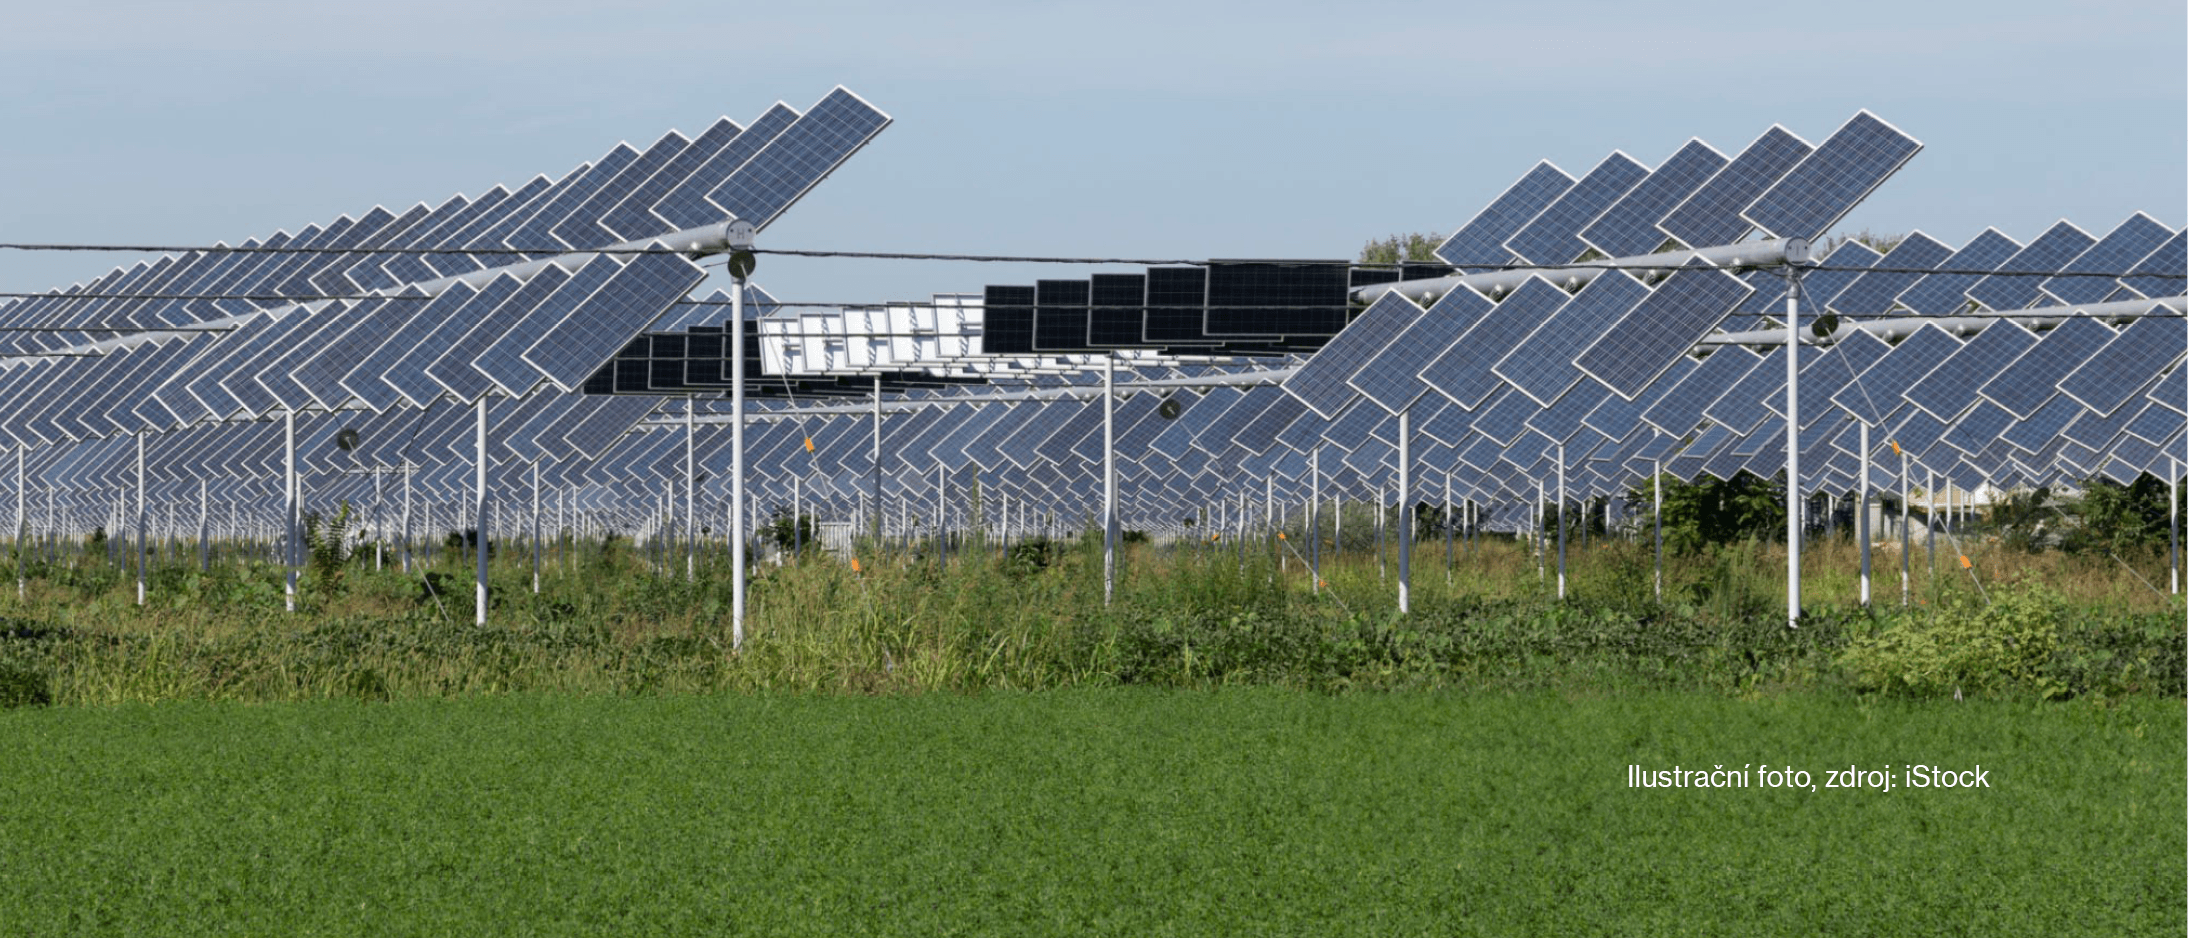 Agrovoltaika v Česku: Novela mění pravidla pro solární elektrárny na zemědělské půdě